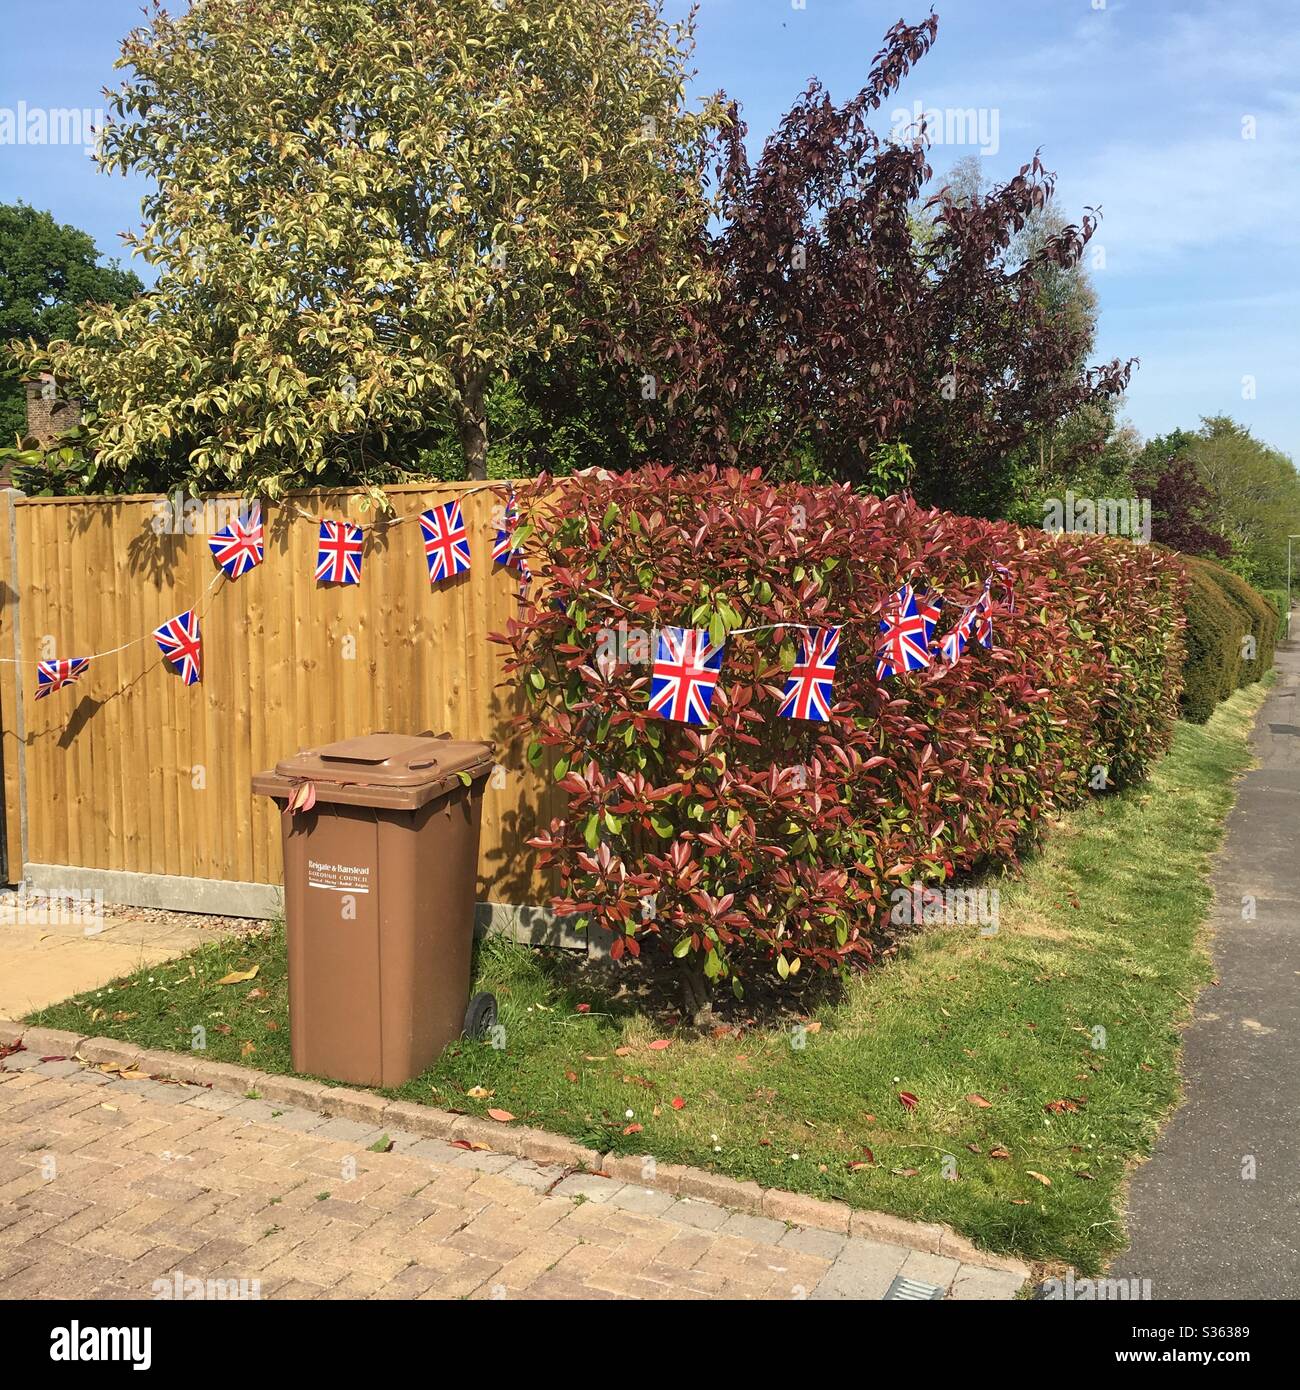 VE Day am bin Day - VE Day Feiern mit einer Hecke und Zaun mit Union Jack Flagge Bunting verziert Stockfoto